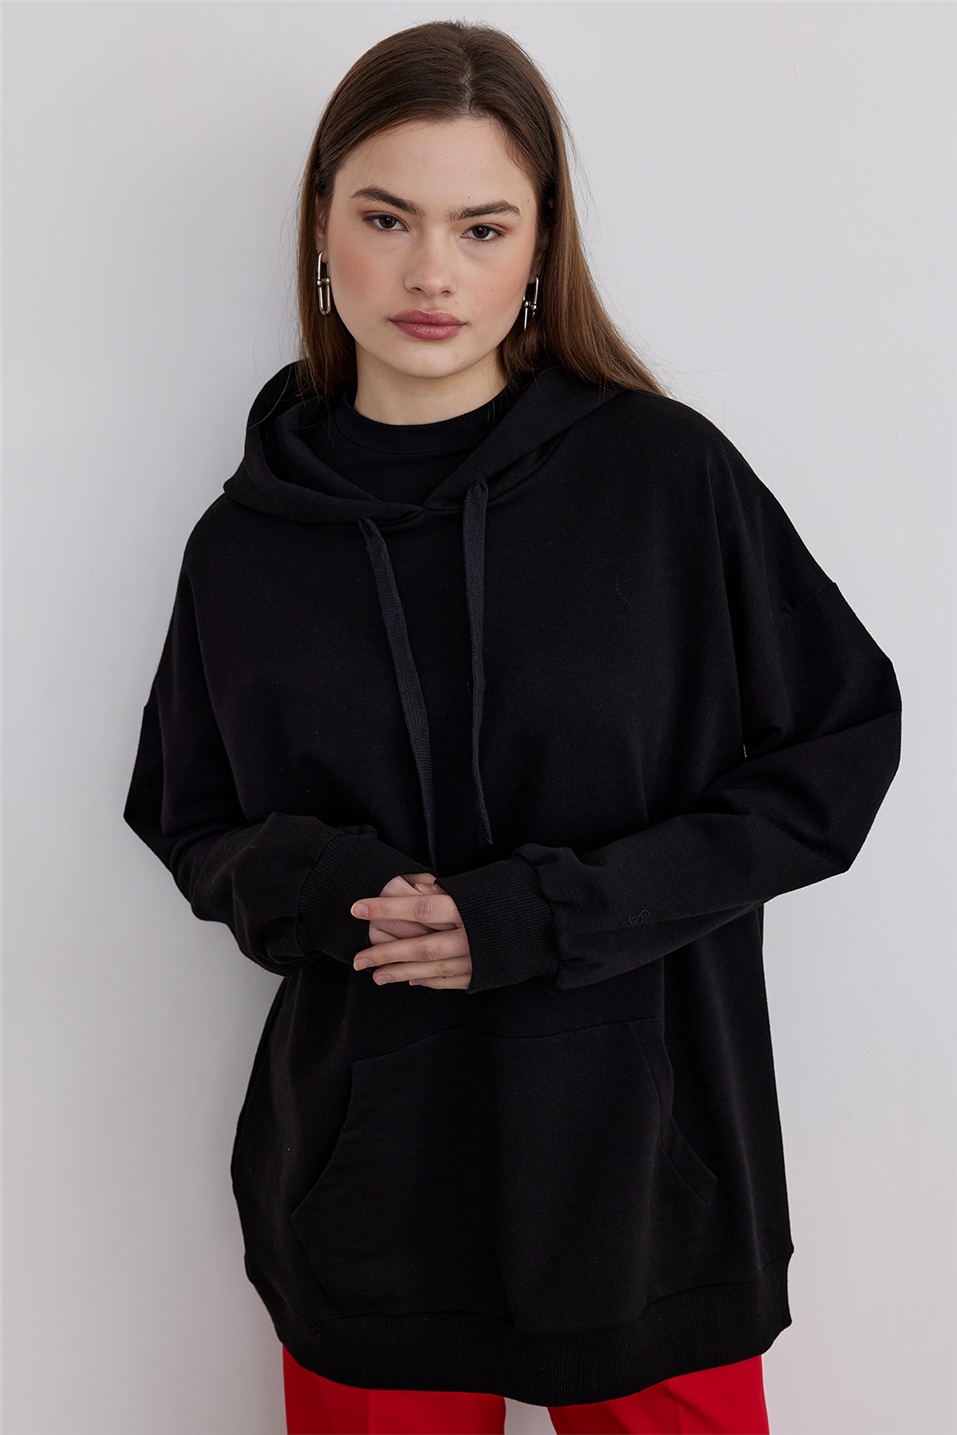 Black Hooded Oversize Sweatshirt